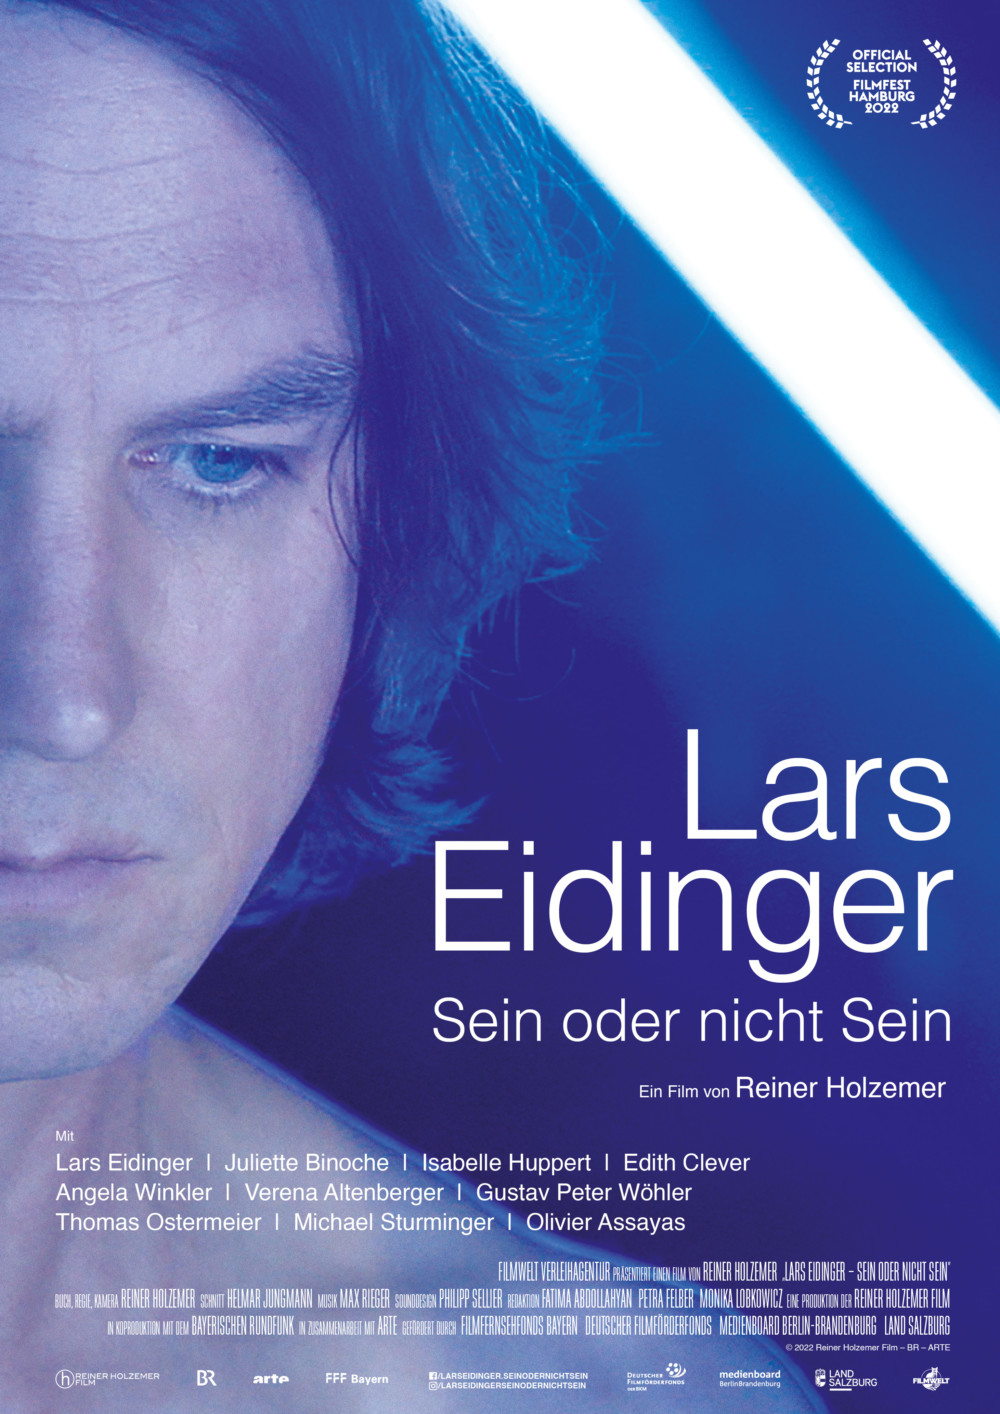 Die Dokumentation „Lars Eidinger – Sein oder nicht sein“ von Reiner Holzemer läuft ab dem 23. März im Kino (©Reiner Holzemer Film/Filmwelt)